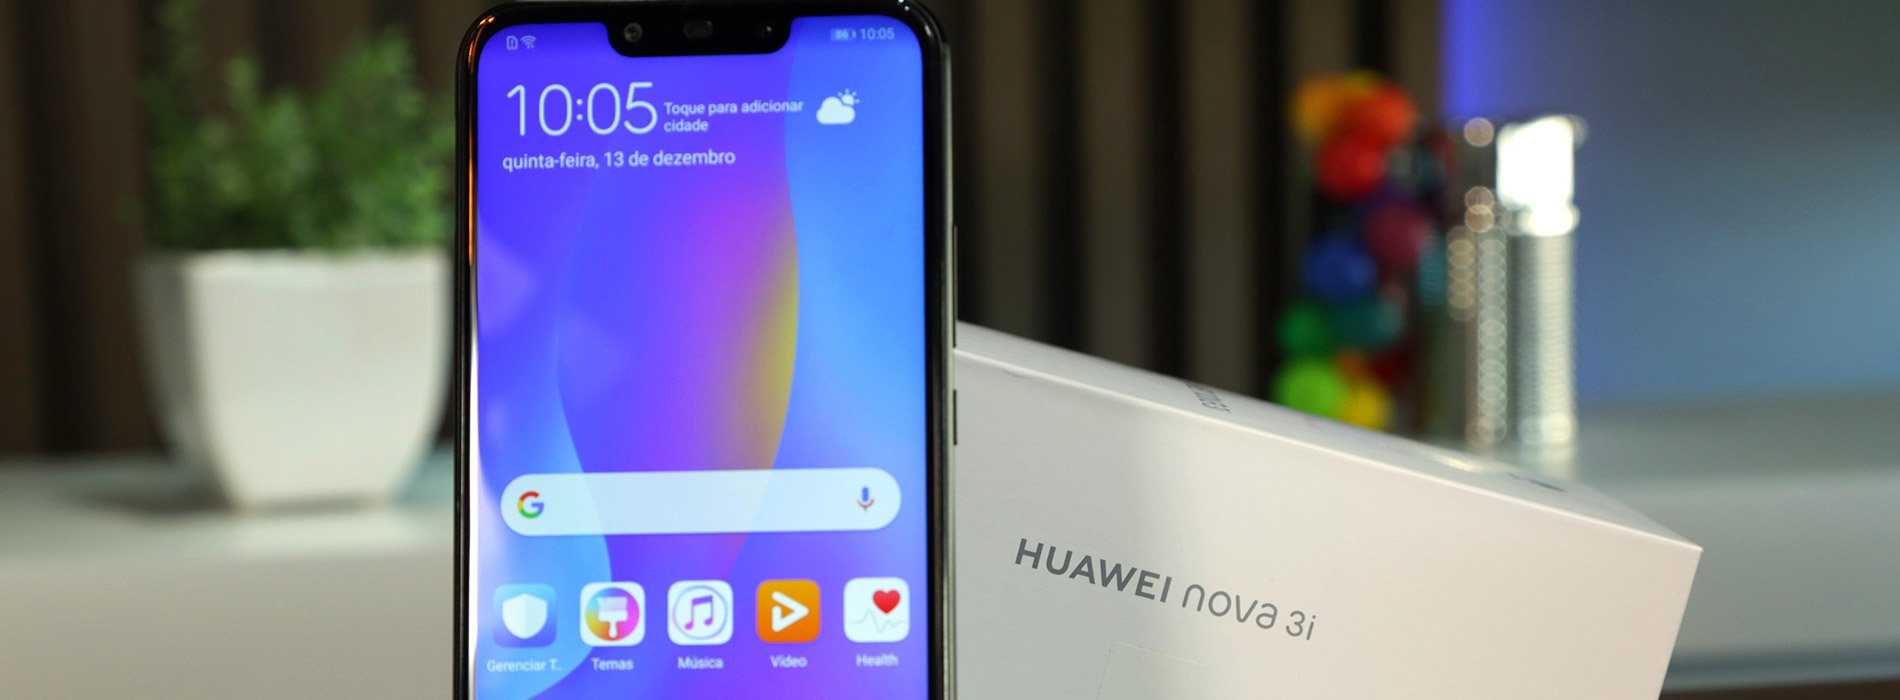 مراجعة: Huawei nova 3i - جهاز رائع به الكثير من الميزات 1